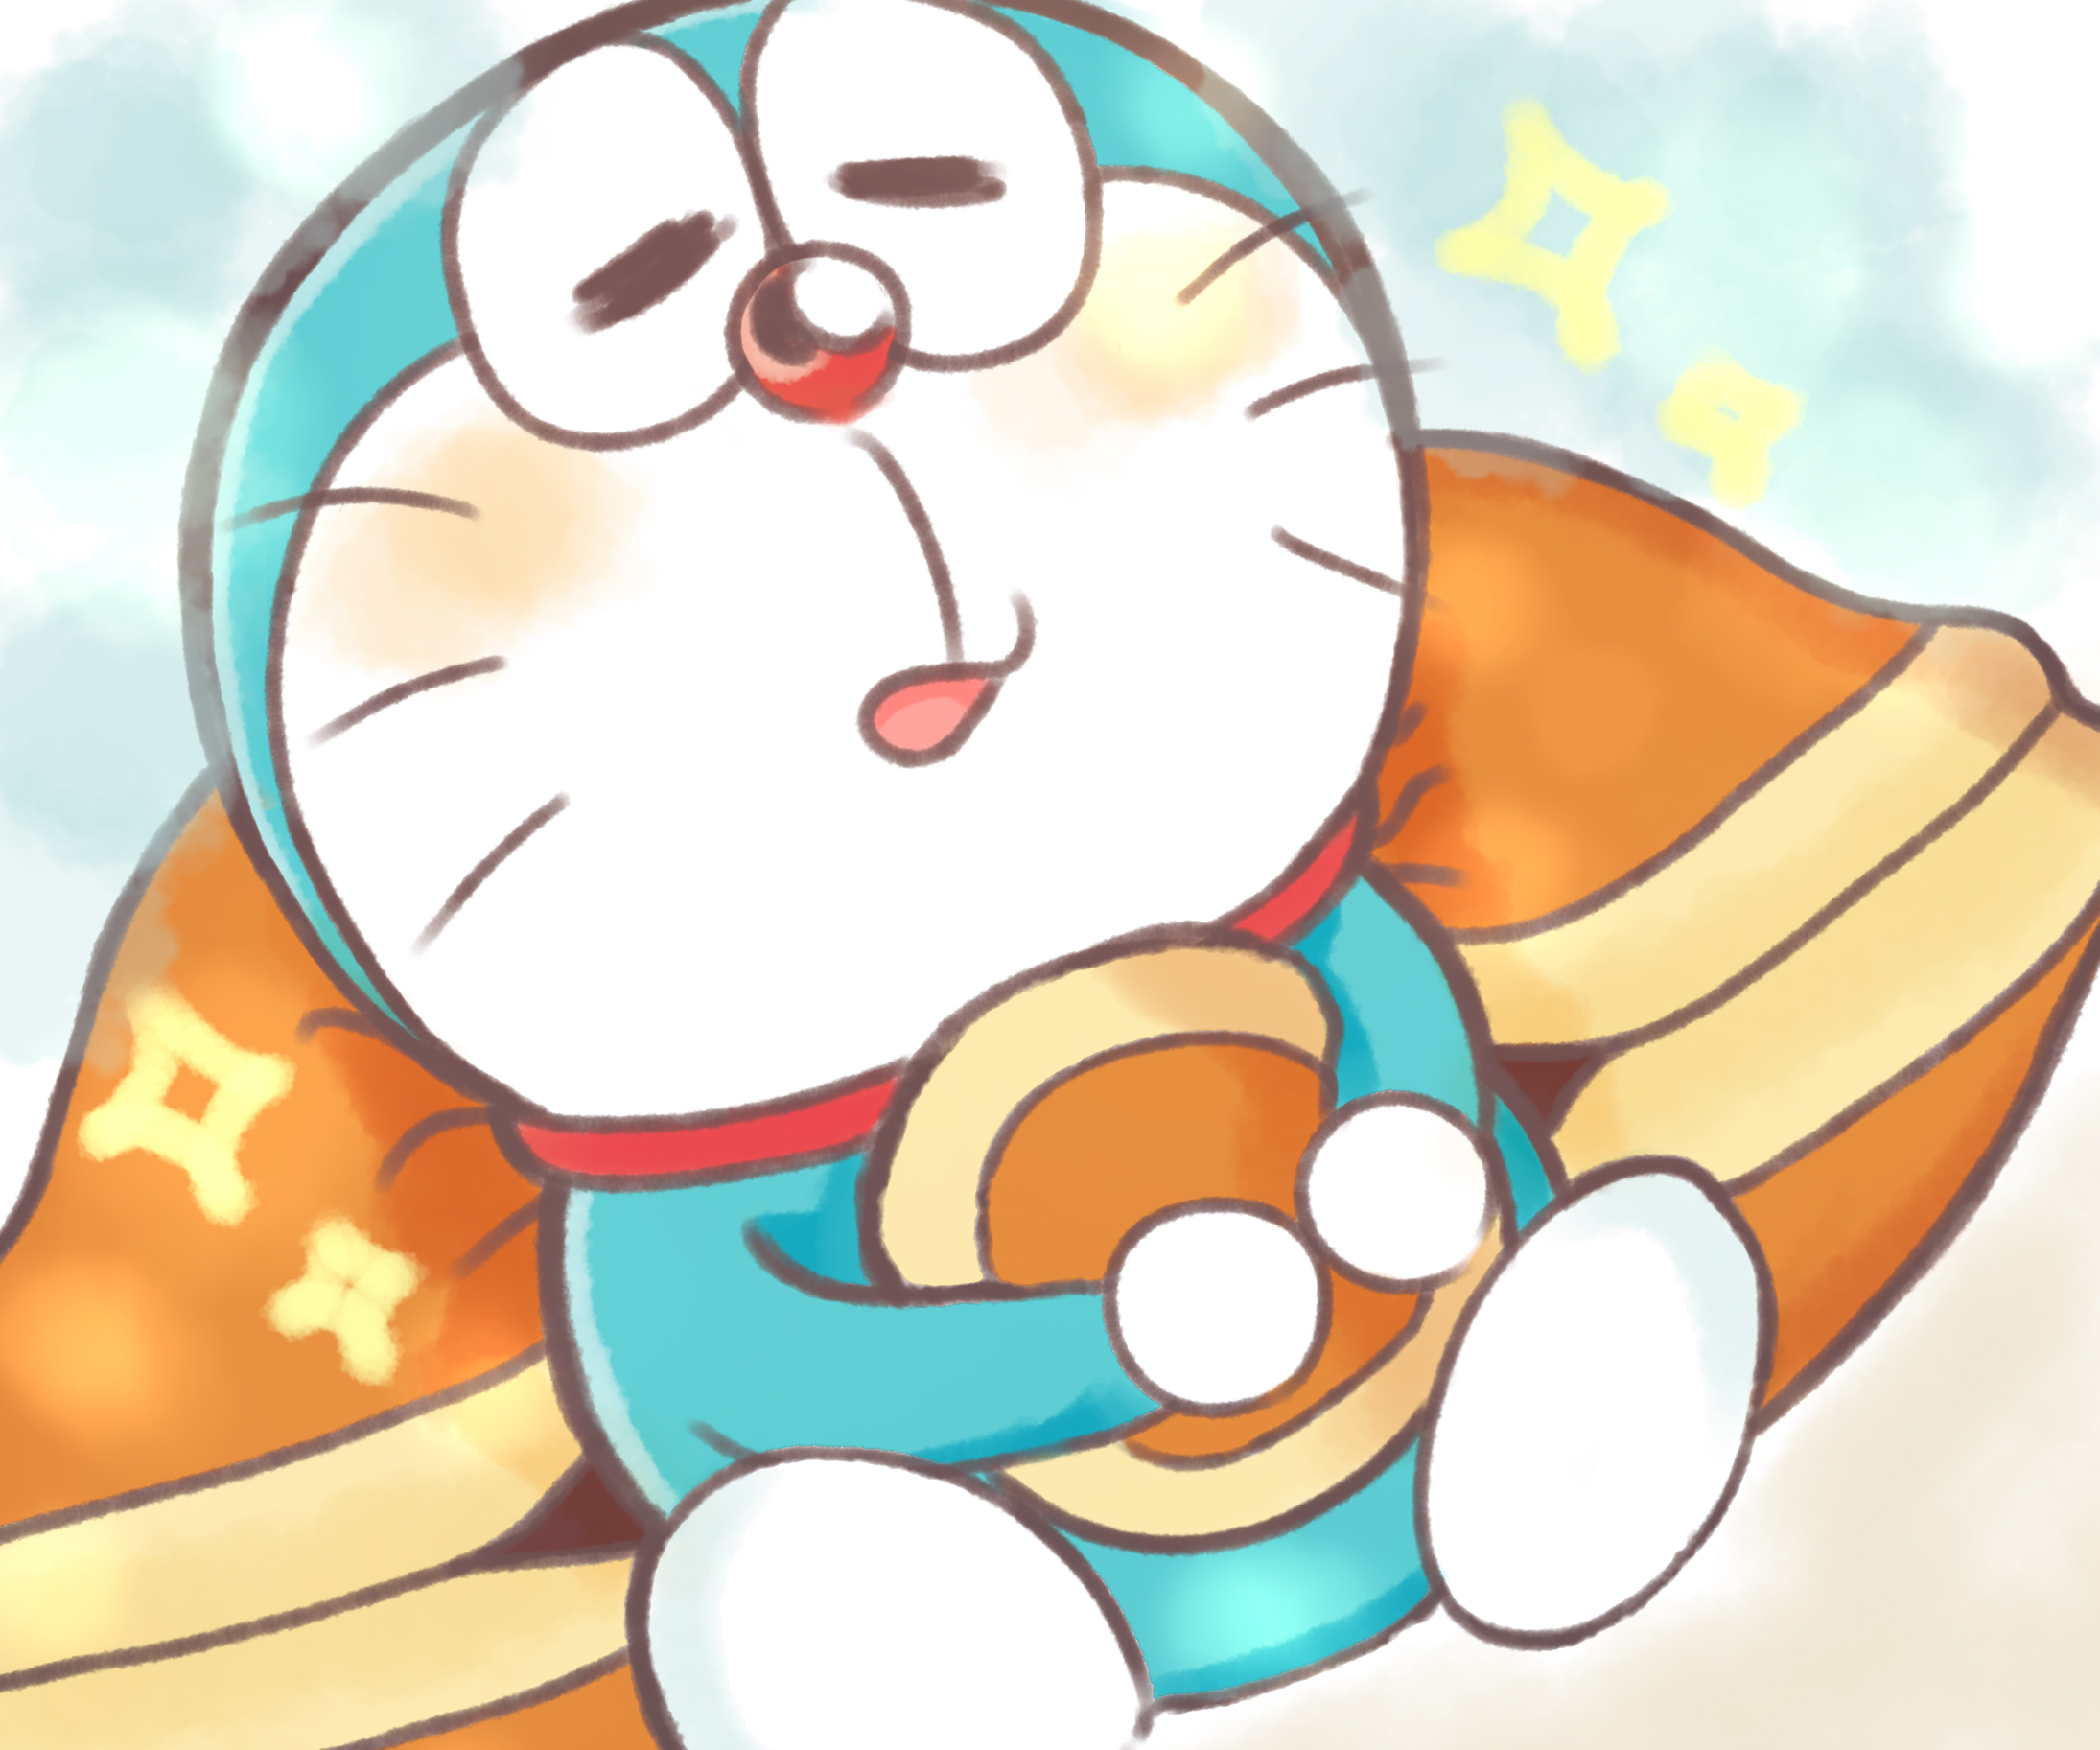 Hình vẽ Doraemon cute sẽ mang đến cho bạn một cảm giác thú vị và tuyệt vời. Hãy thưởng thức những hình ảnh này để tận hưởng niềm vui và sự đáng yêu của nhân vật này.